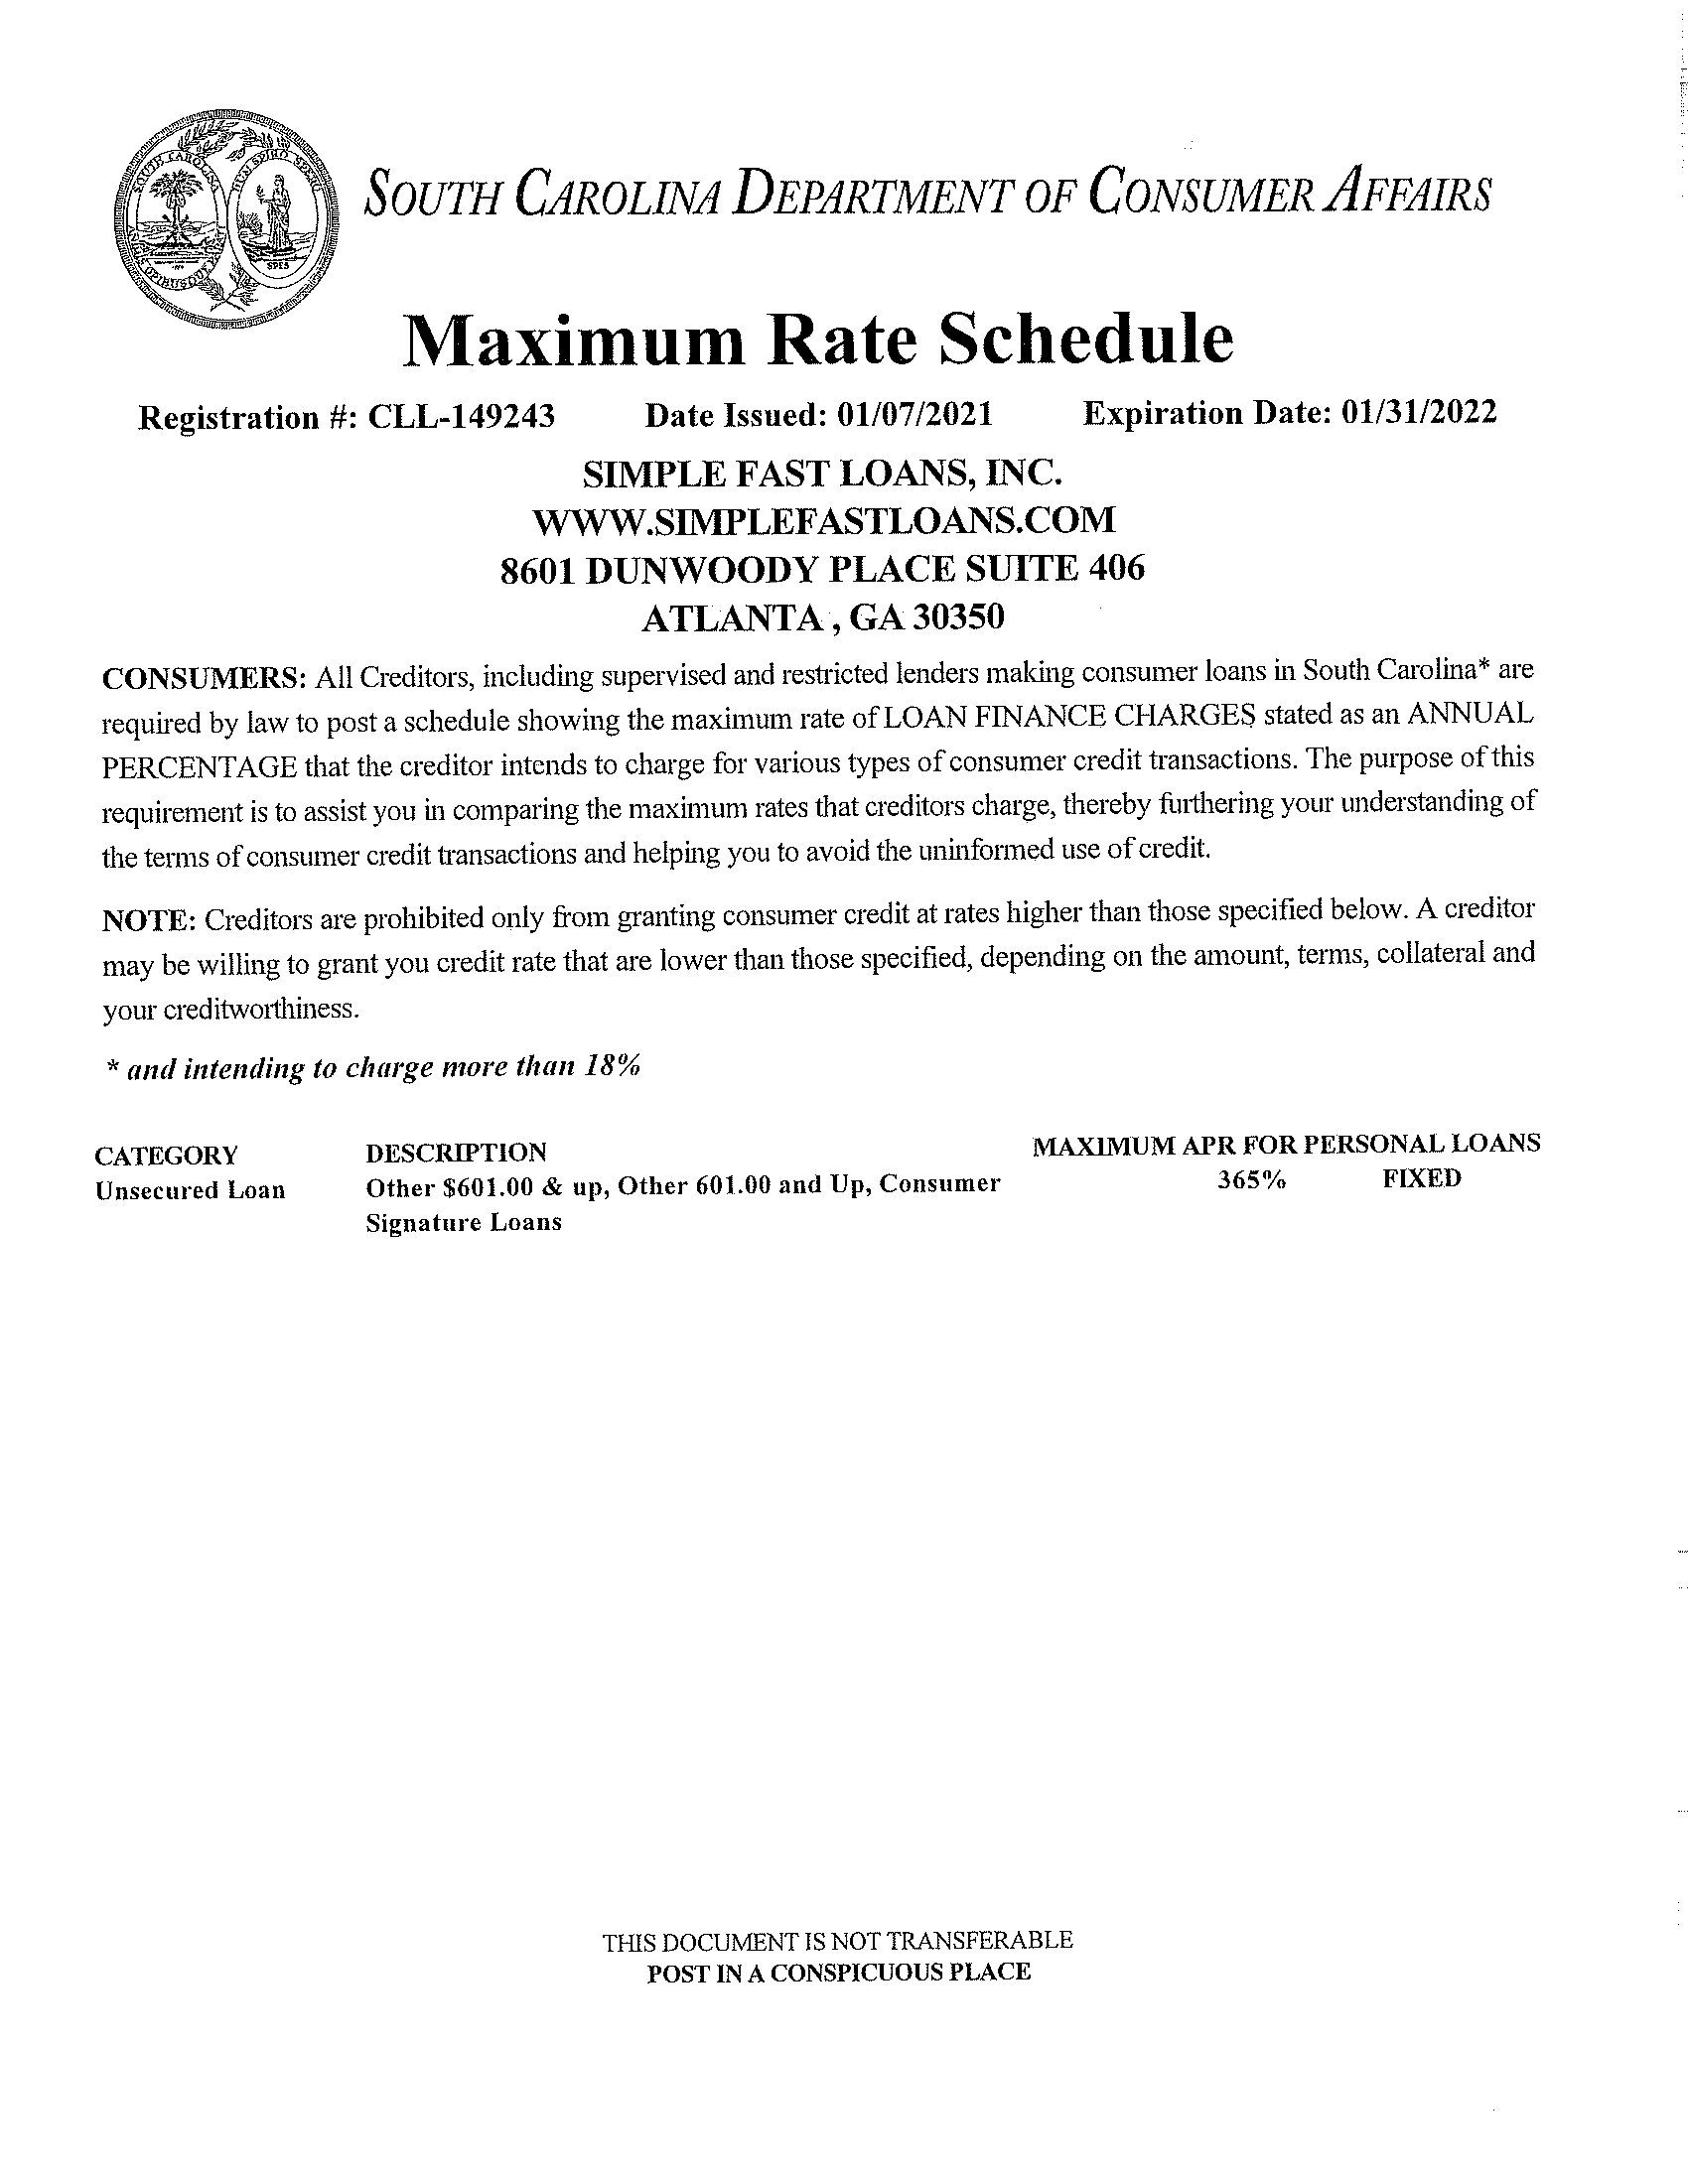 South Carolina Max Rate Schedule Certificate